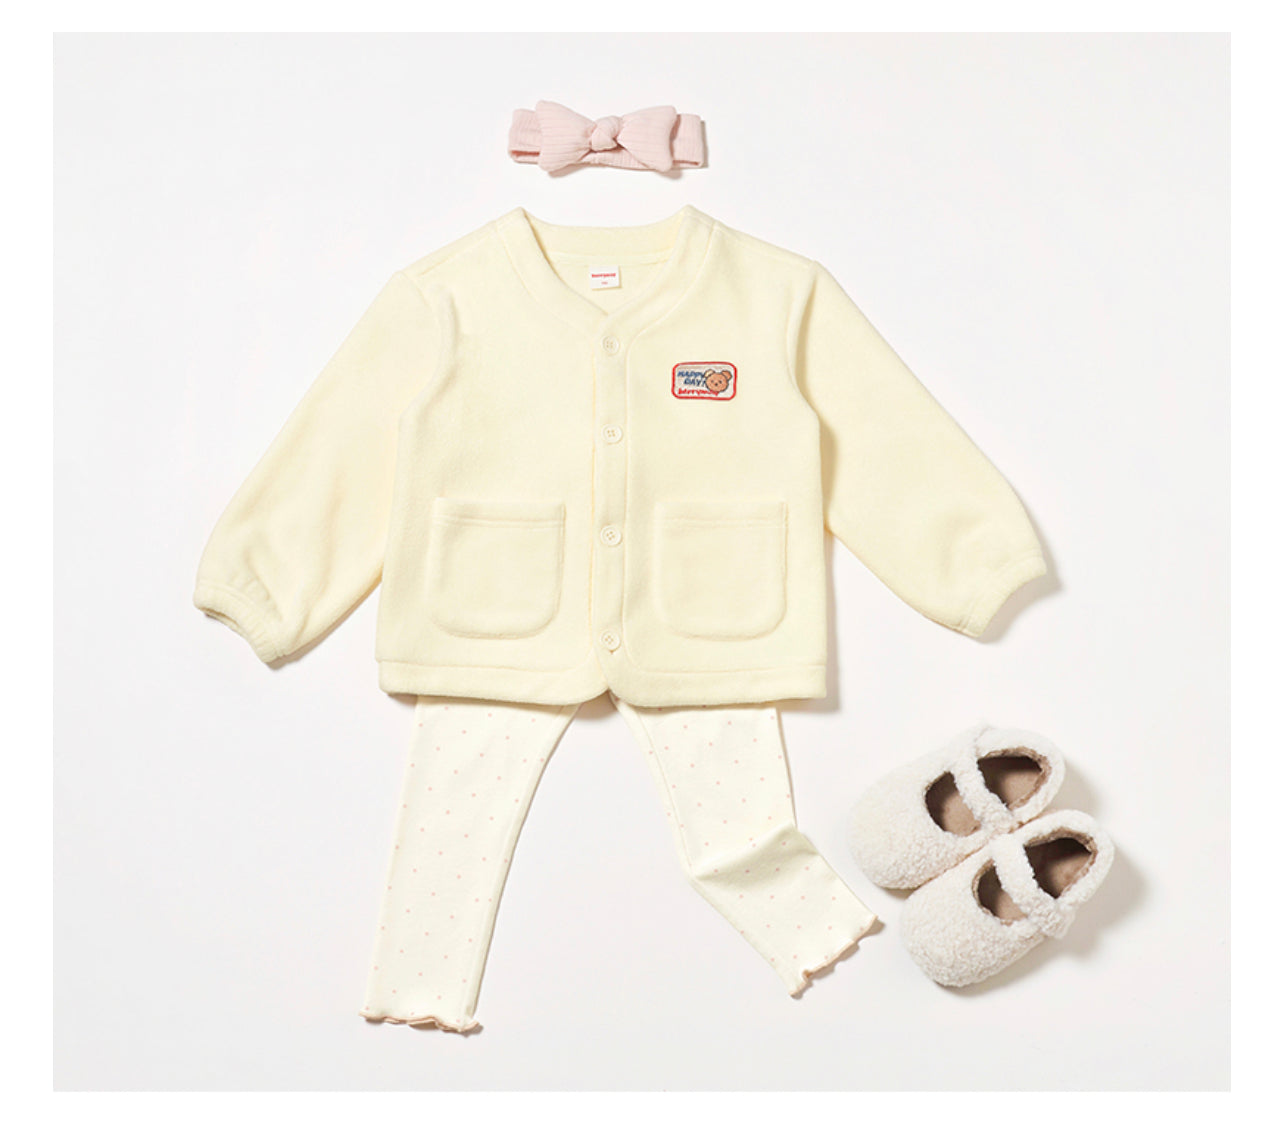 Preschool Fleece Cardigan - Cream / Pink